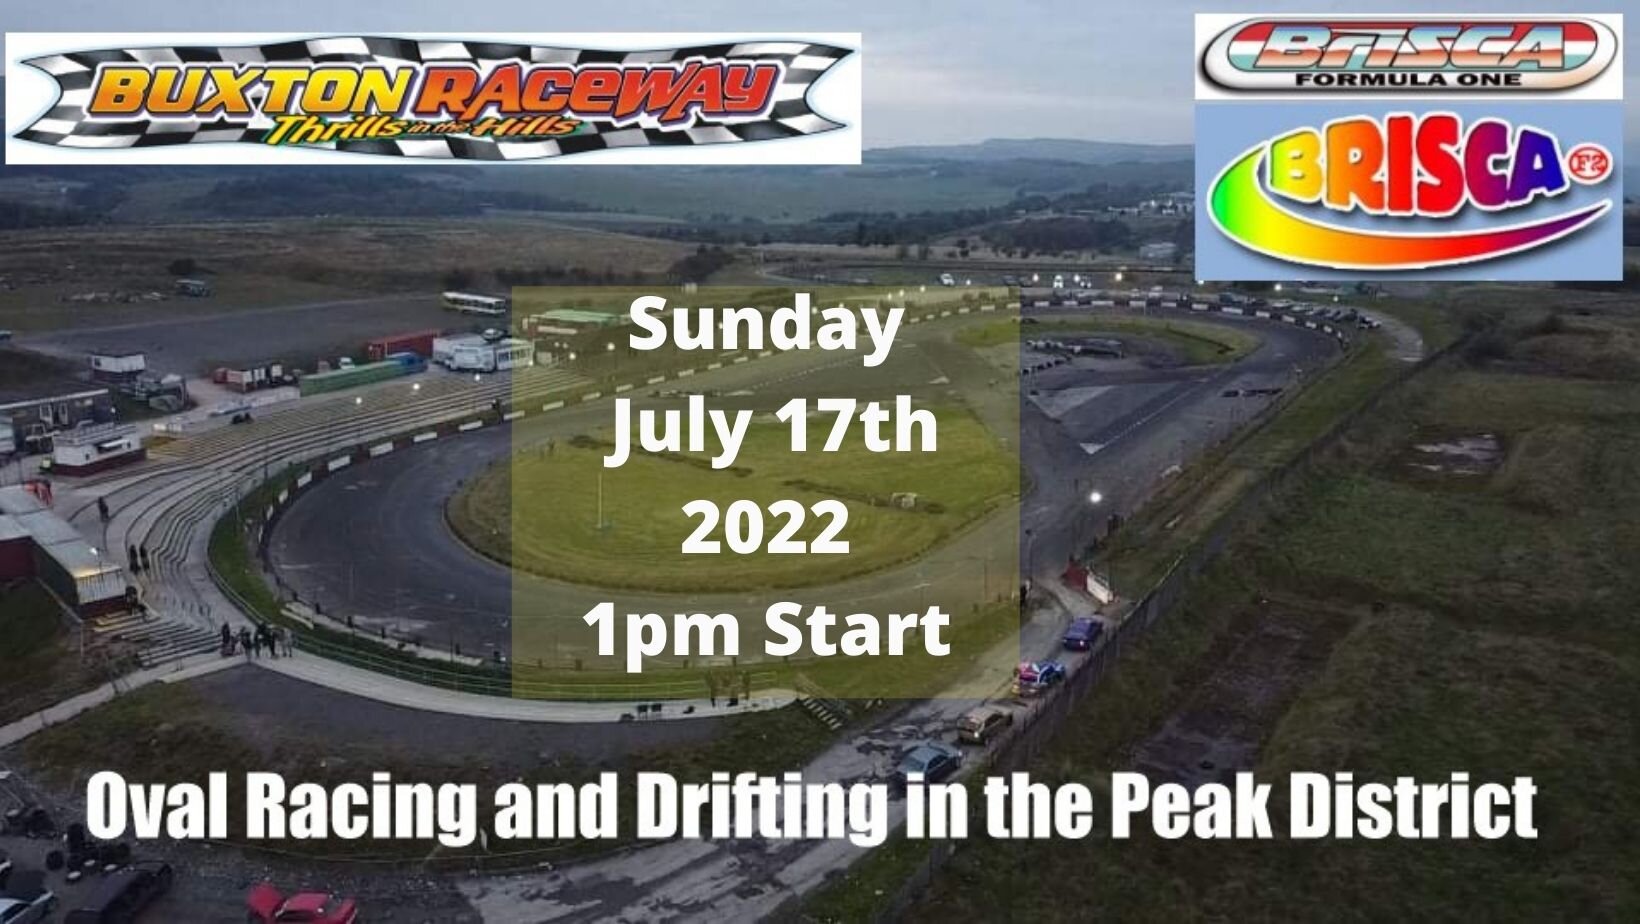 Buxton Raceway | Sunday 17th July 1pm